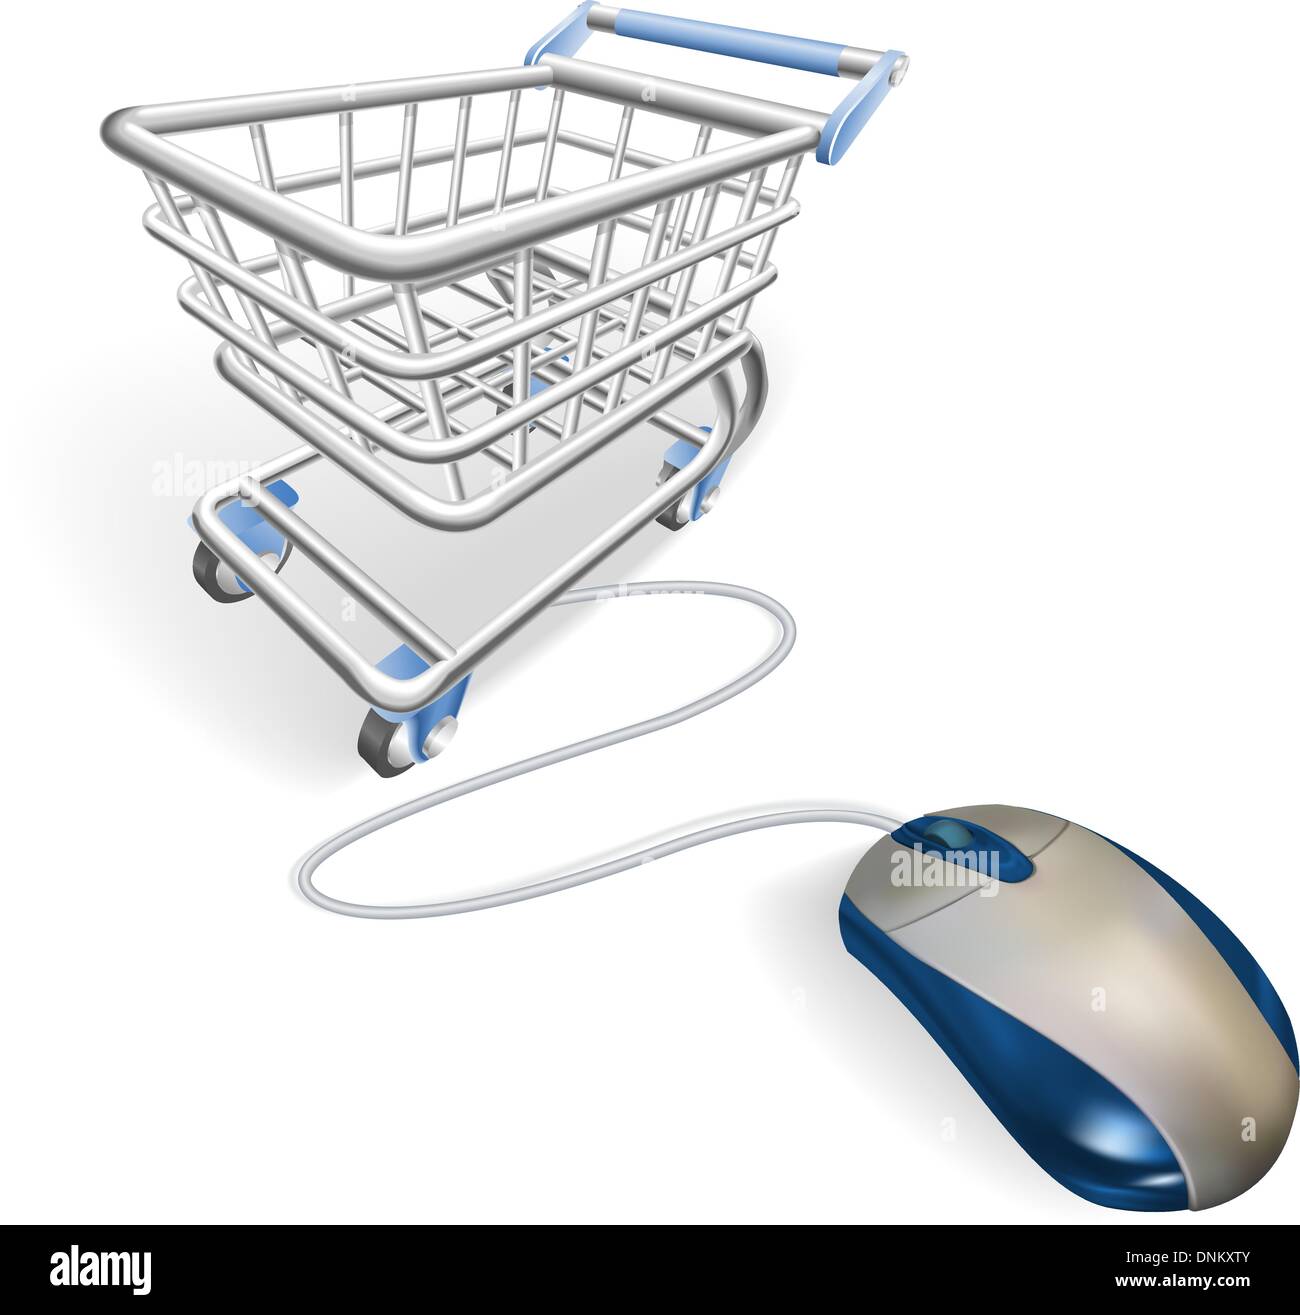 Une souris connectée à un panier chariot. Concept pour le shopping sur internet en ligne. Illustration de Vecteur